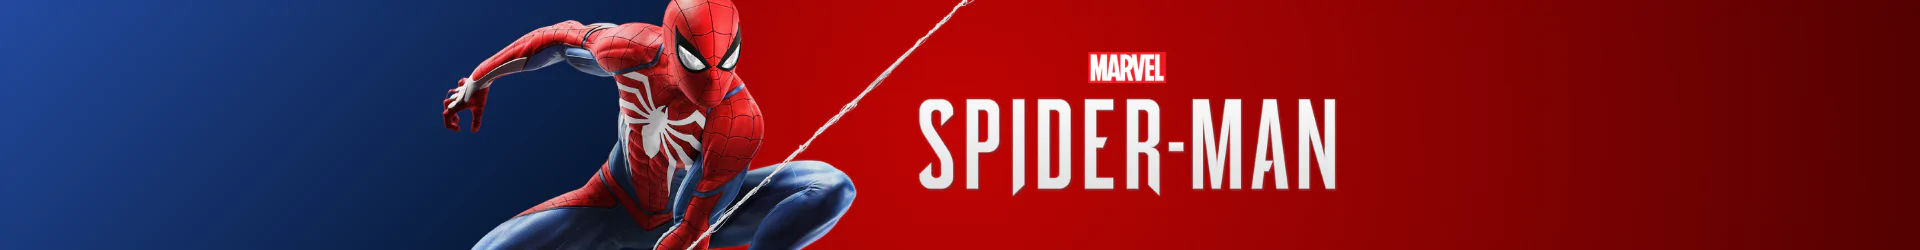 Spider-Man plakate banner